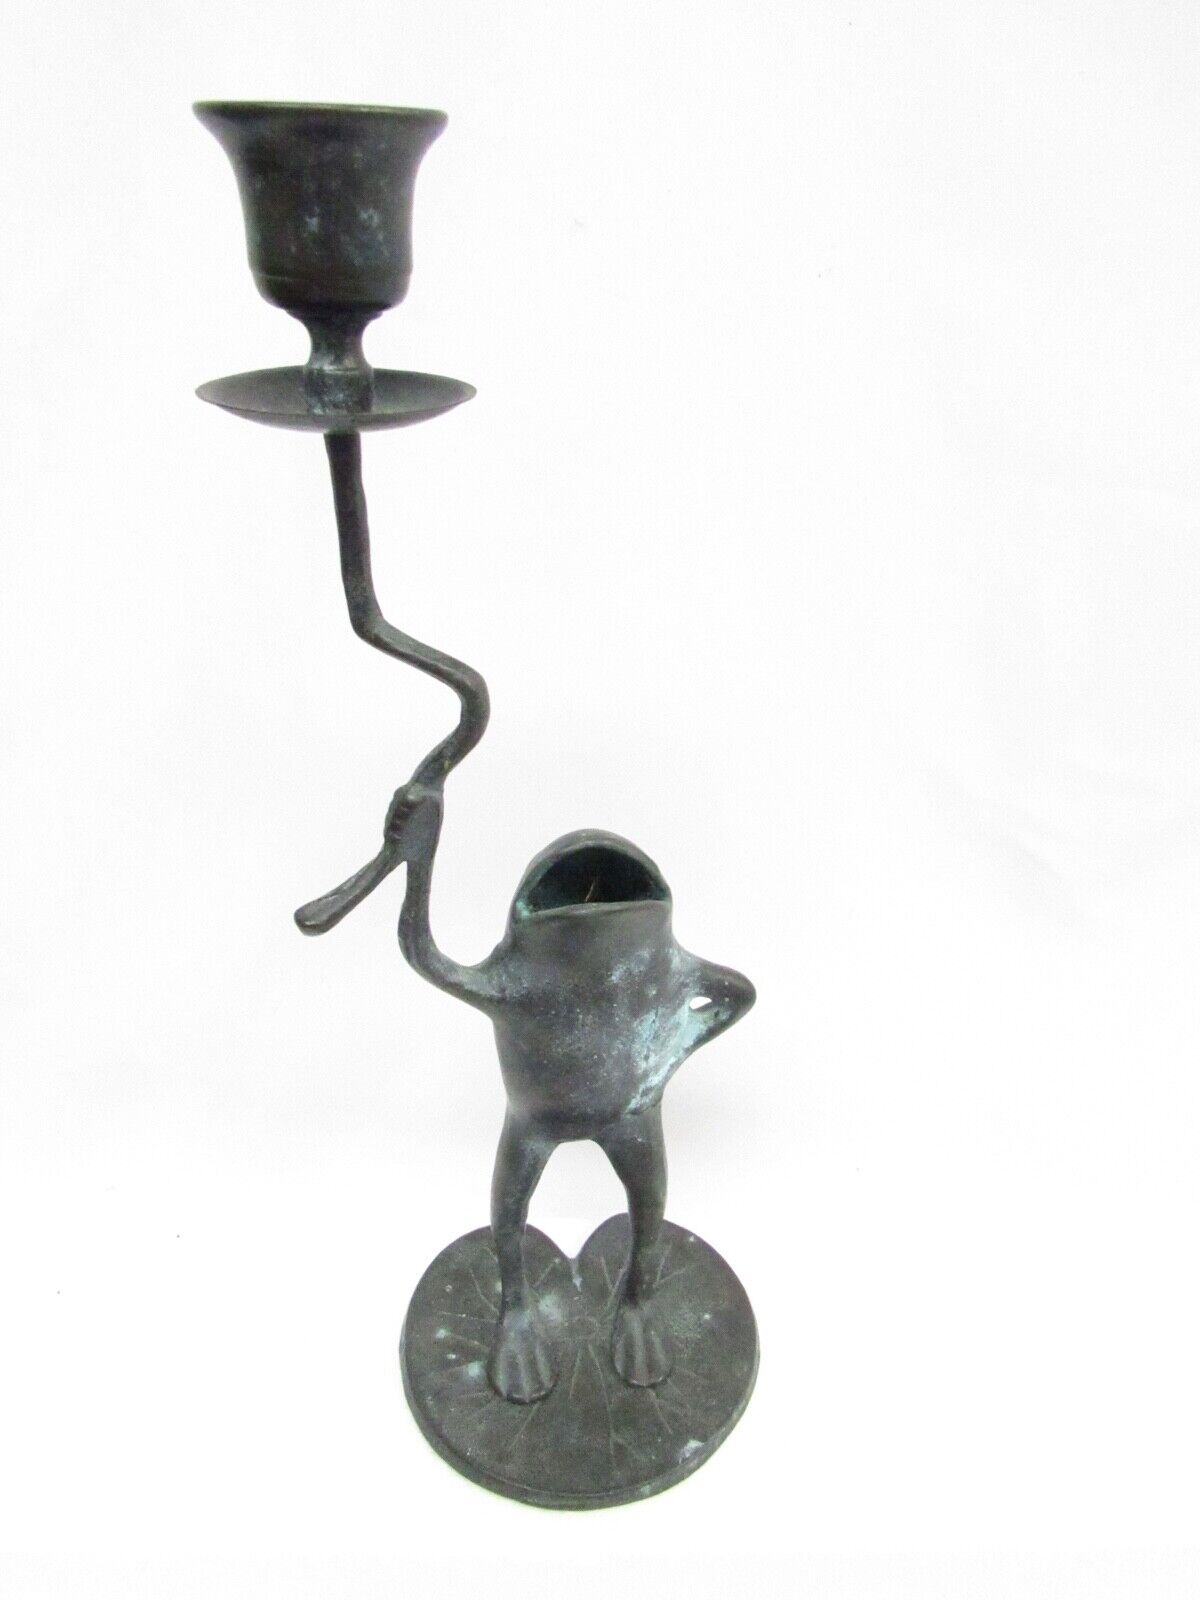 Vintage Whimsical Metal Frog Lily Pad Candlestick Holder Verdi Gris Finish SPI